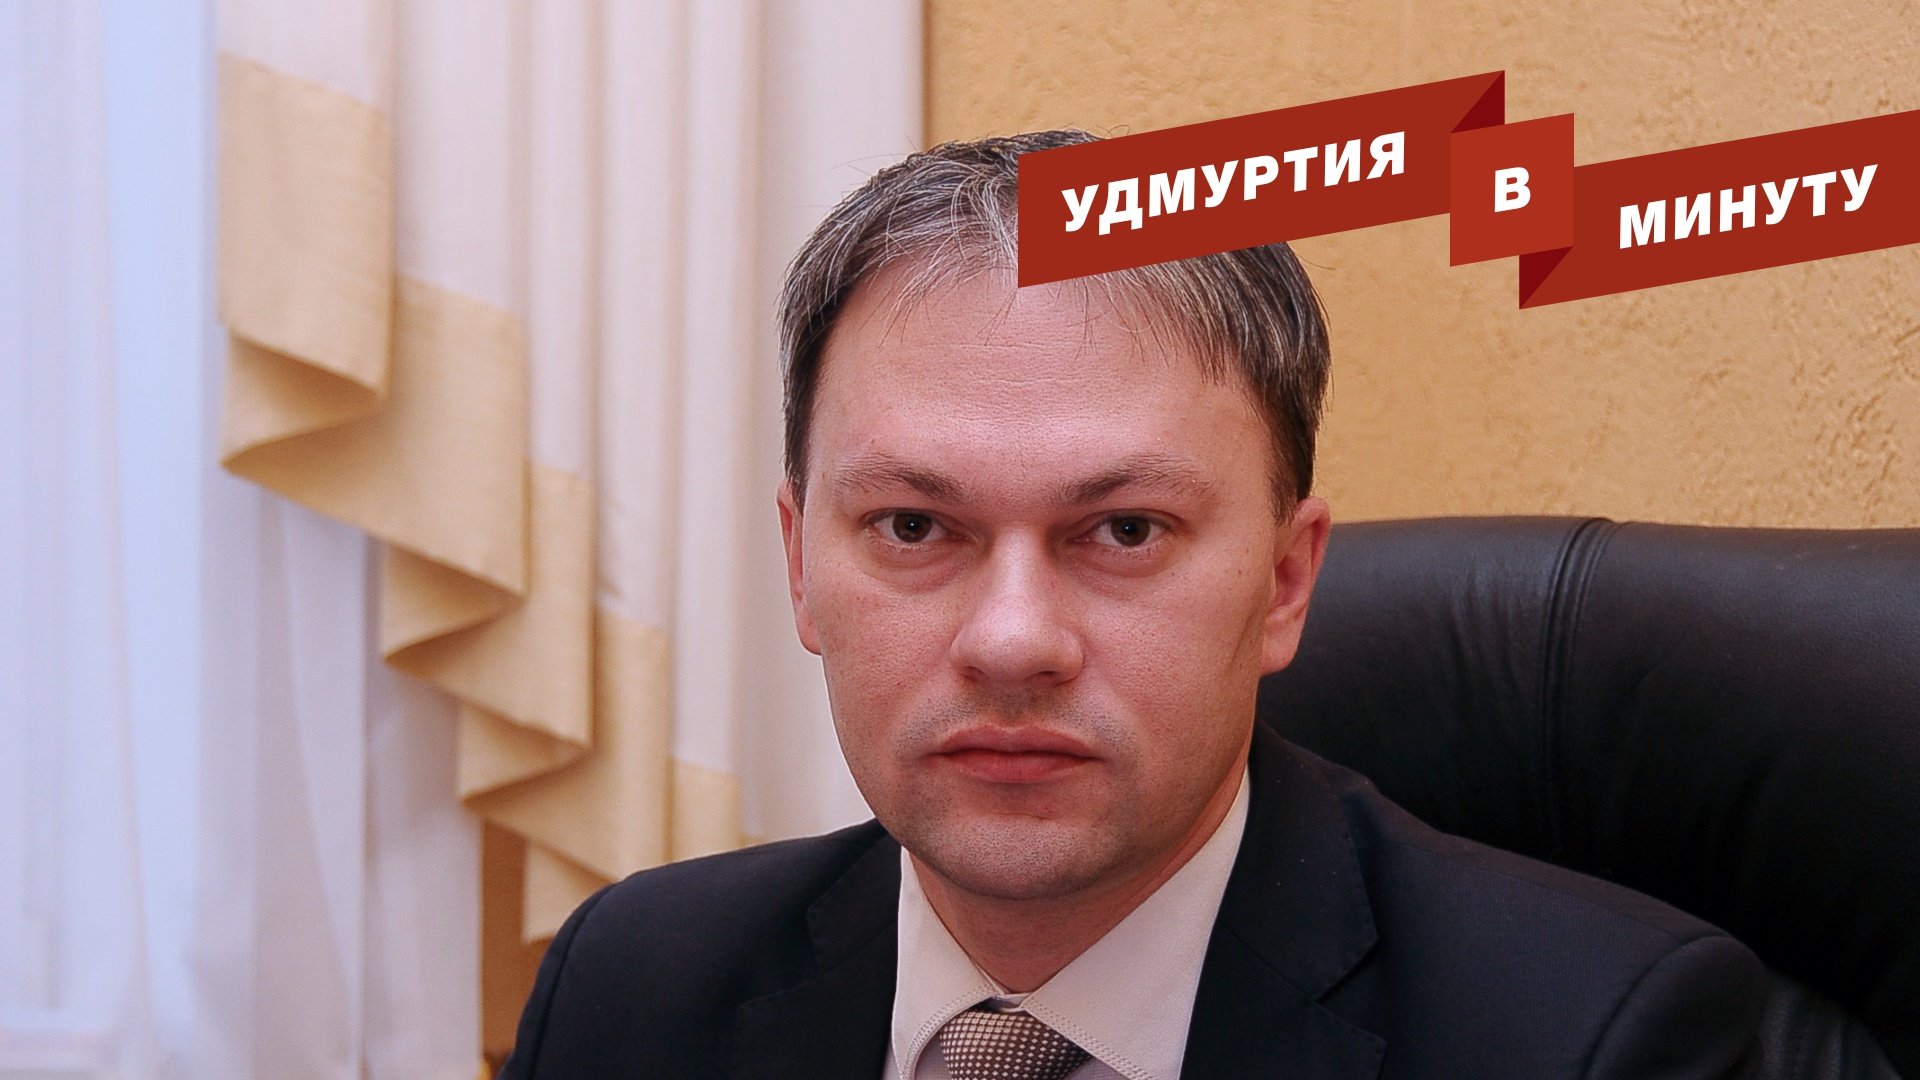 Удмуртия в минуту: увольнение Воронцова и непогода в республике